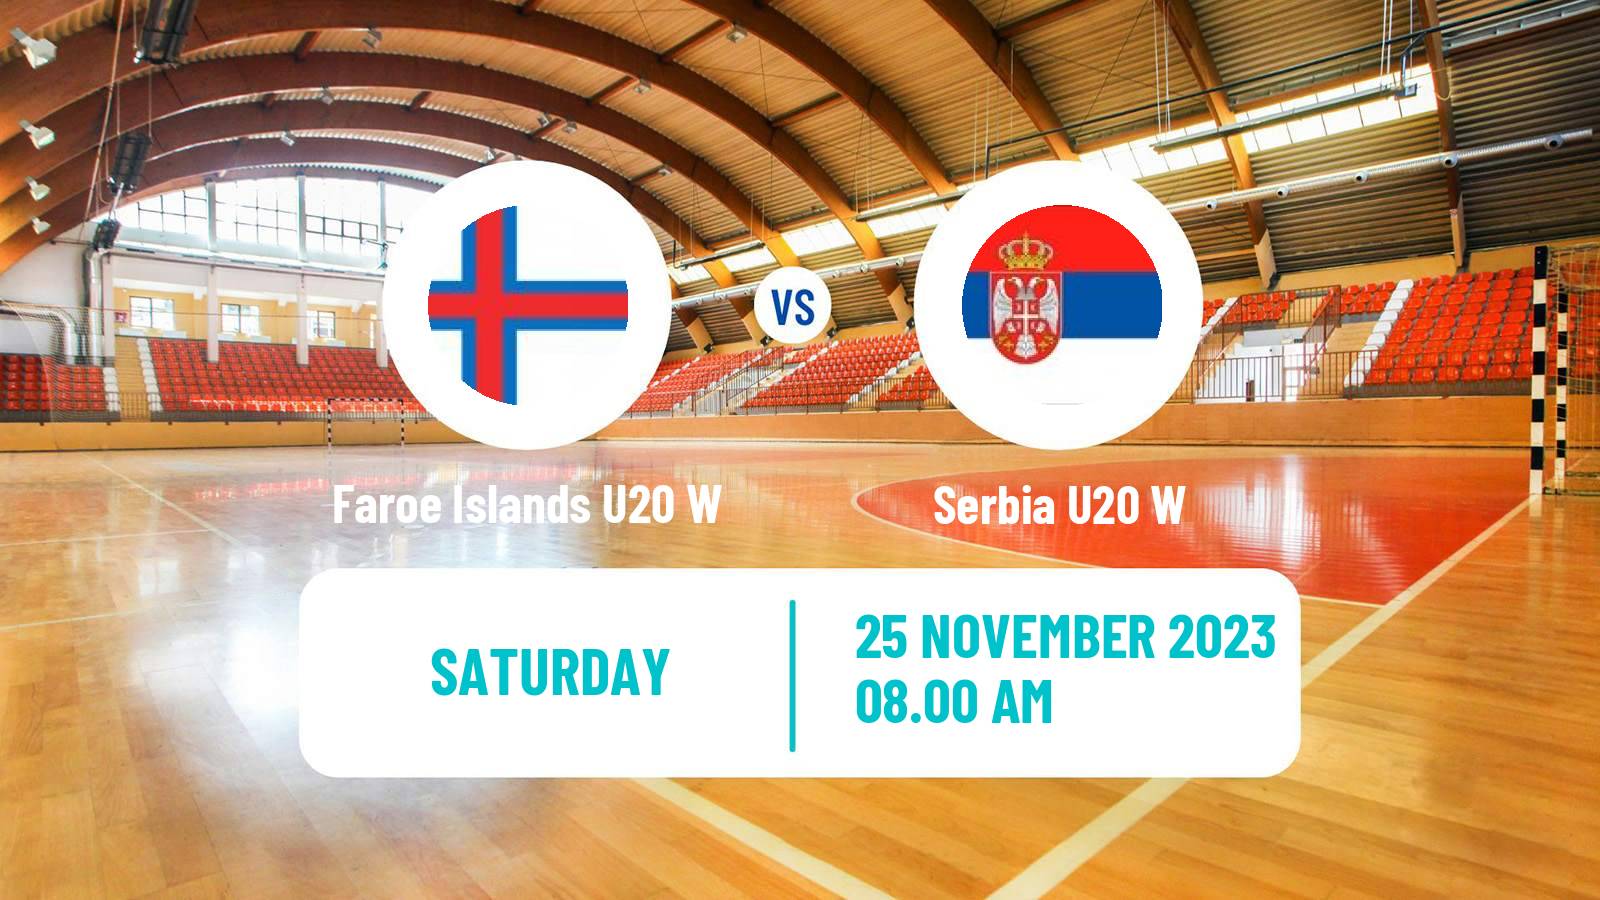 Handball World Championship U20 Handball Women Faroe Islands U20 W - Serbia U20 W